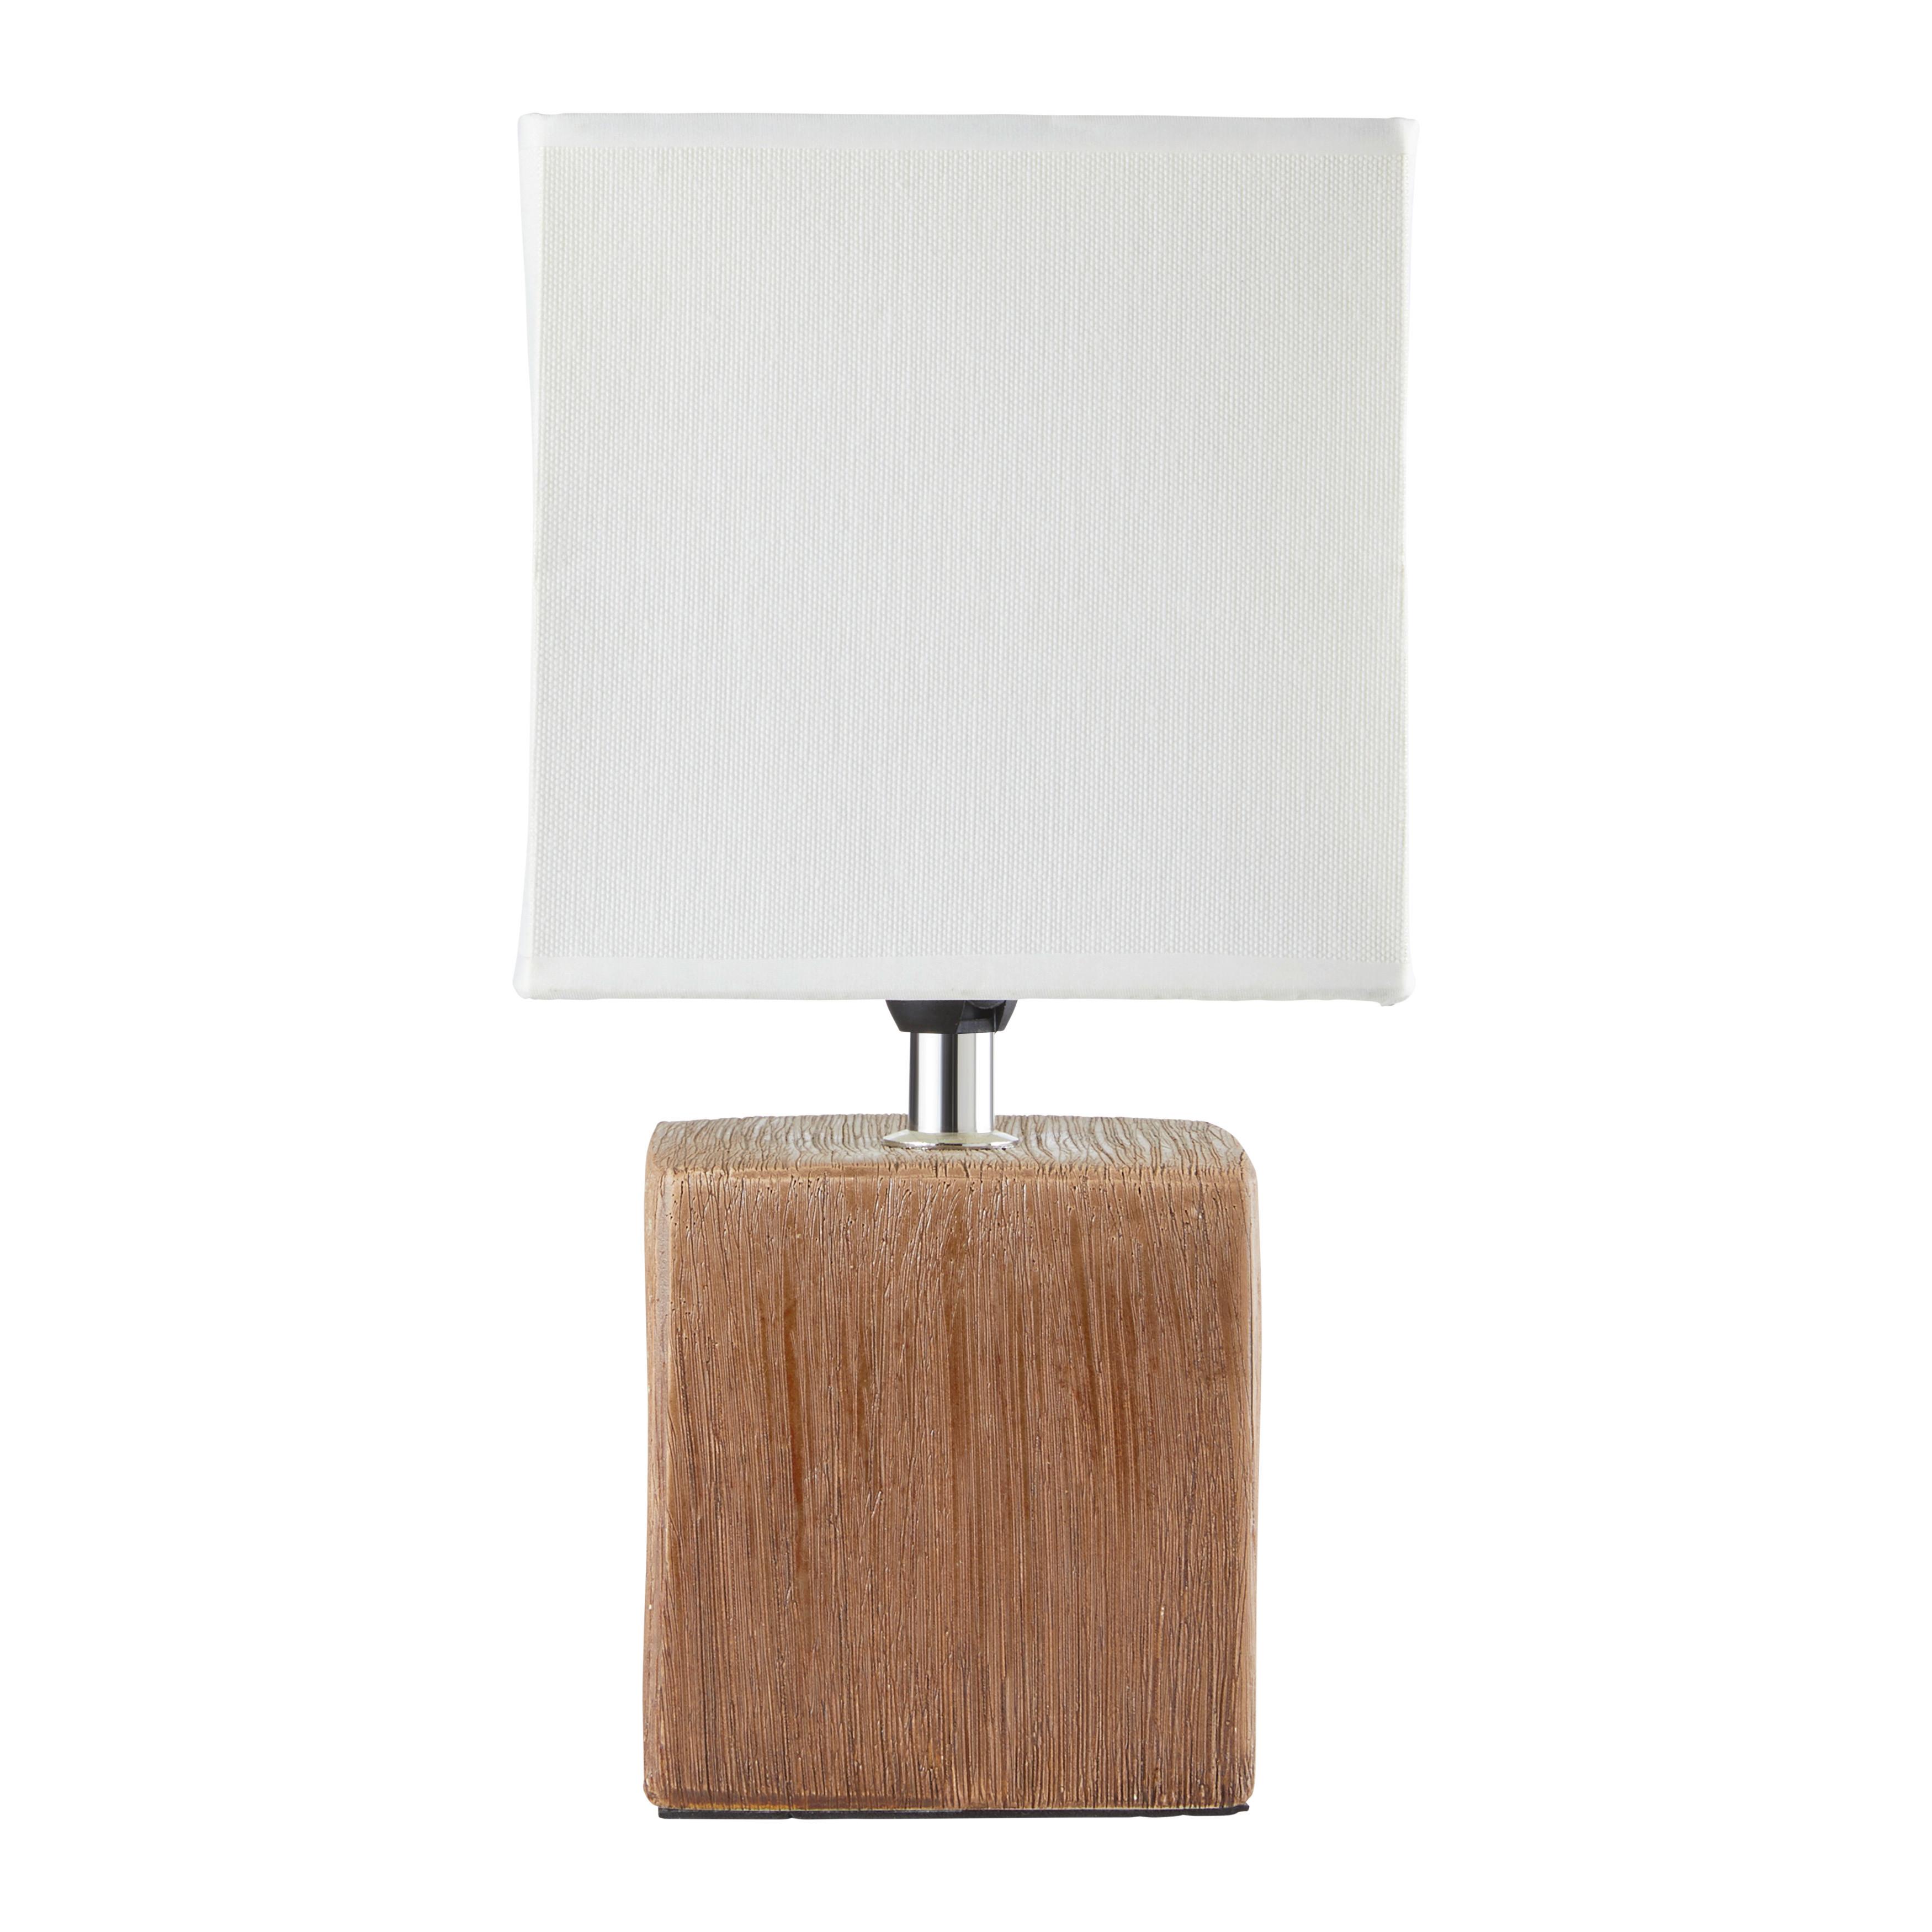 Asztali Lámpa Wanda - Sötétbarna/Bézs, modern, Kerámia/Textil (15,5/28,5cm) - Modern Living